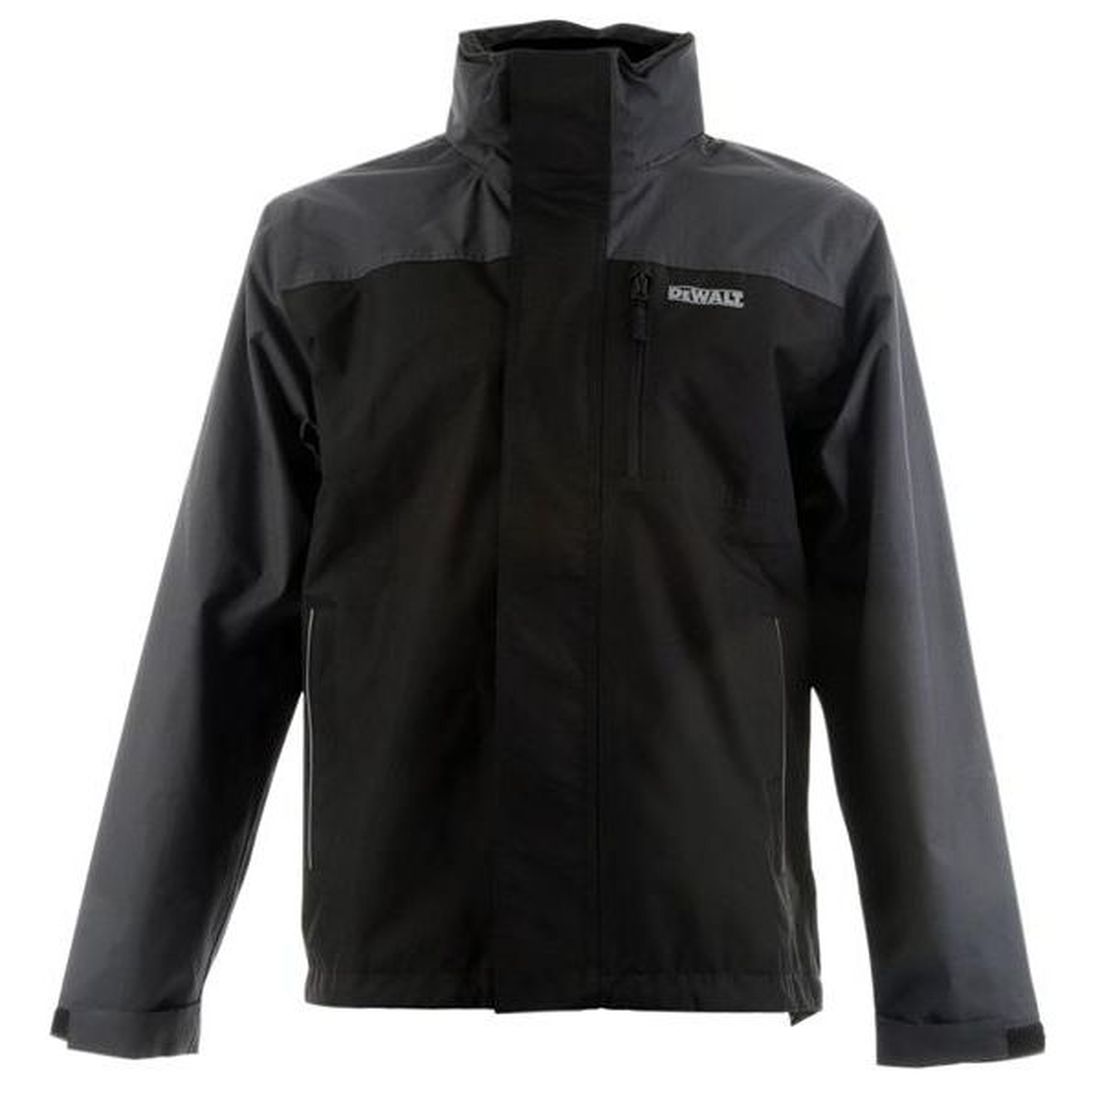 DEWALT Storm Waterproof Jacket Grey/Black - L (46in)                                   